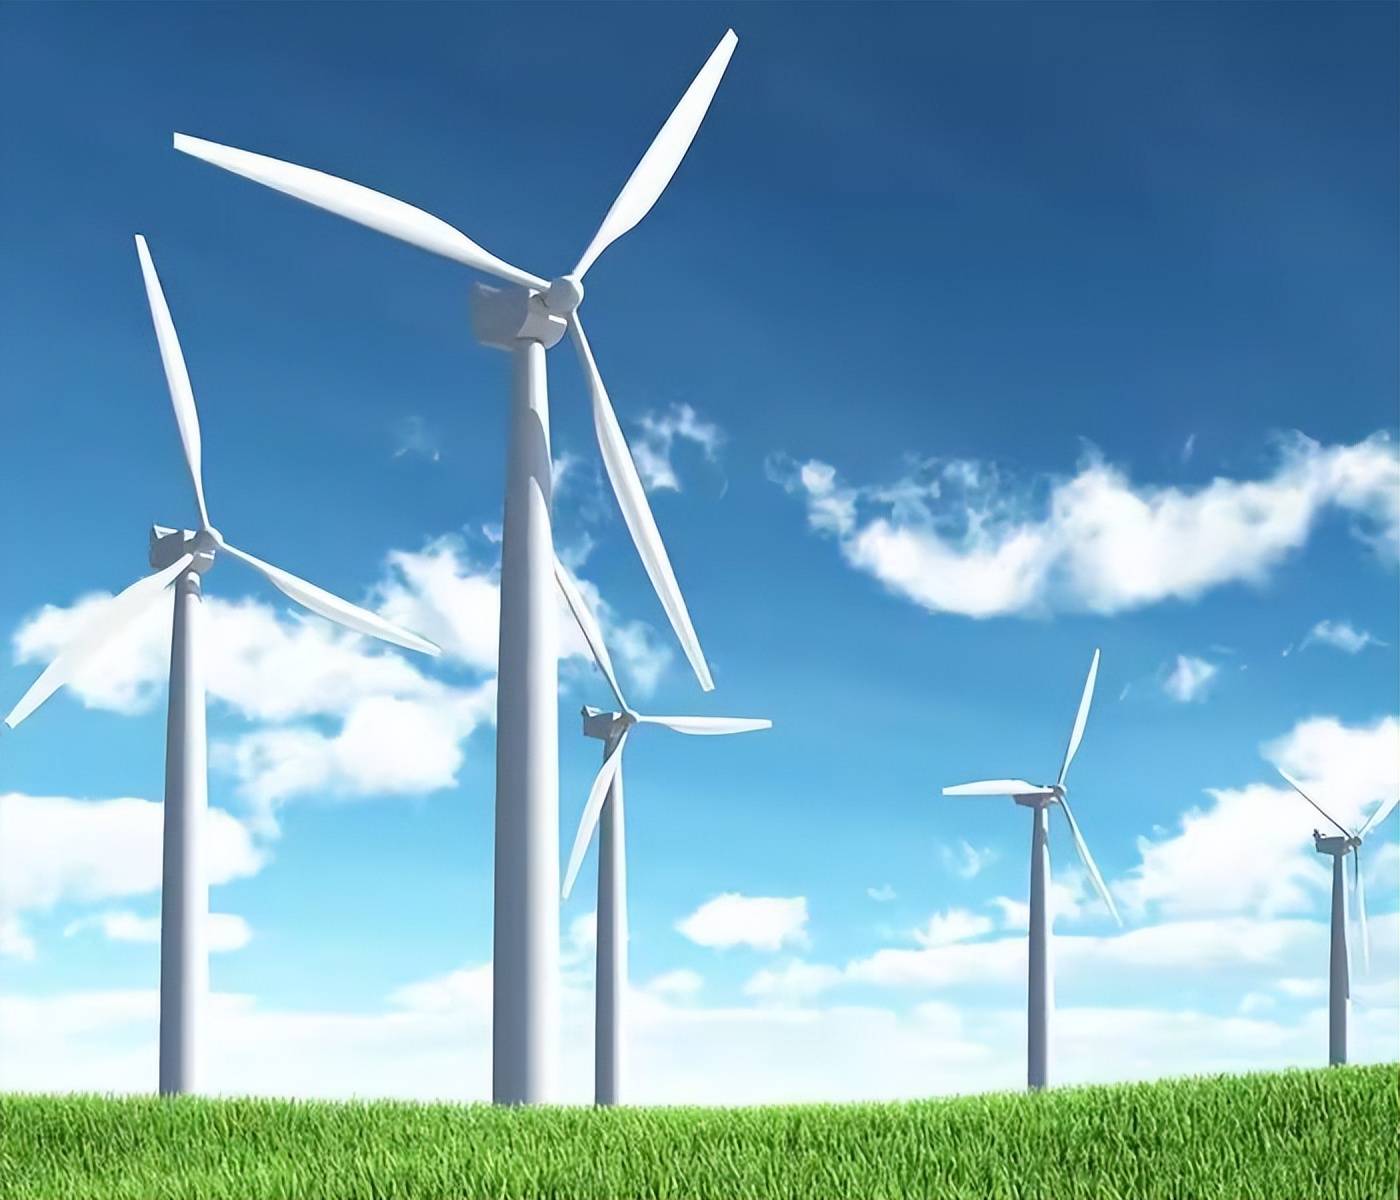 福建全球最大风电机组日发电超38万度,刷新世界纪录